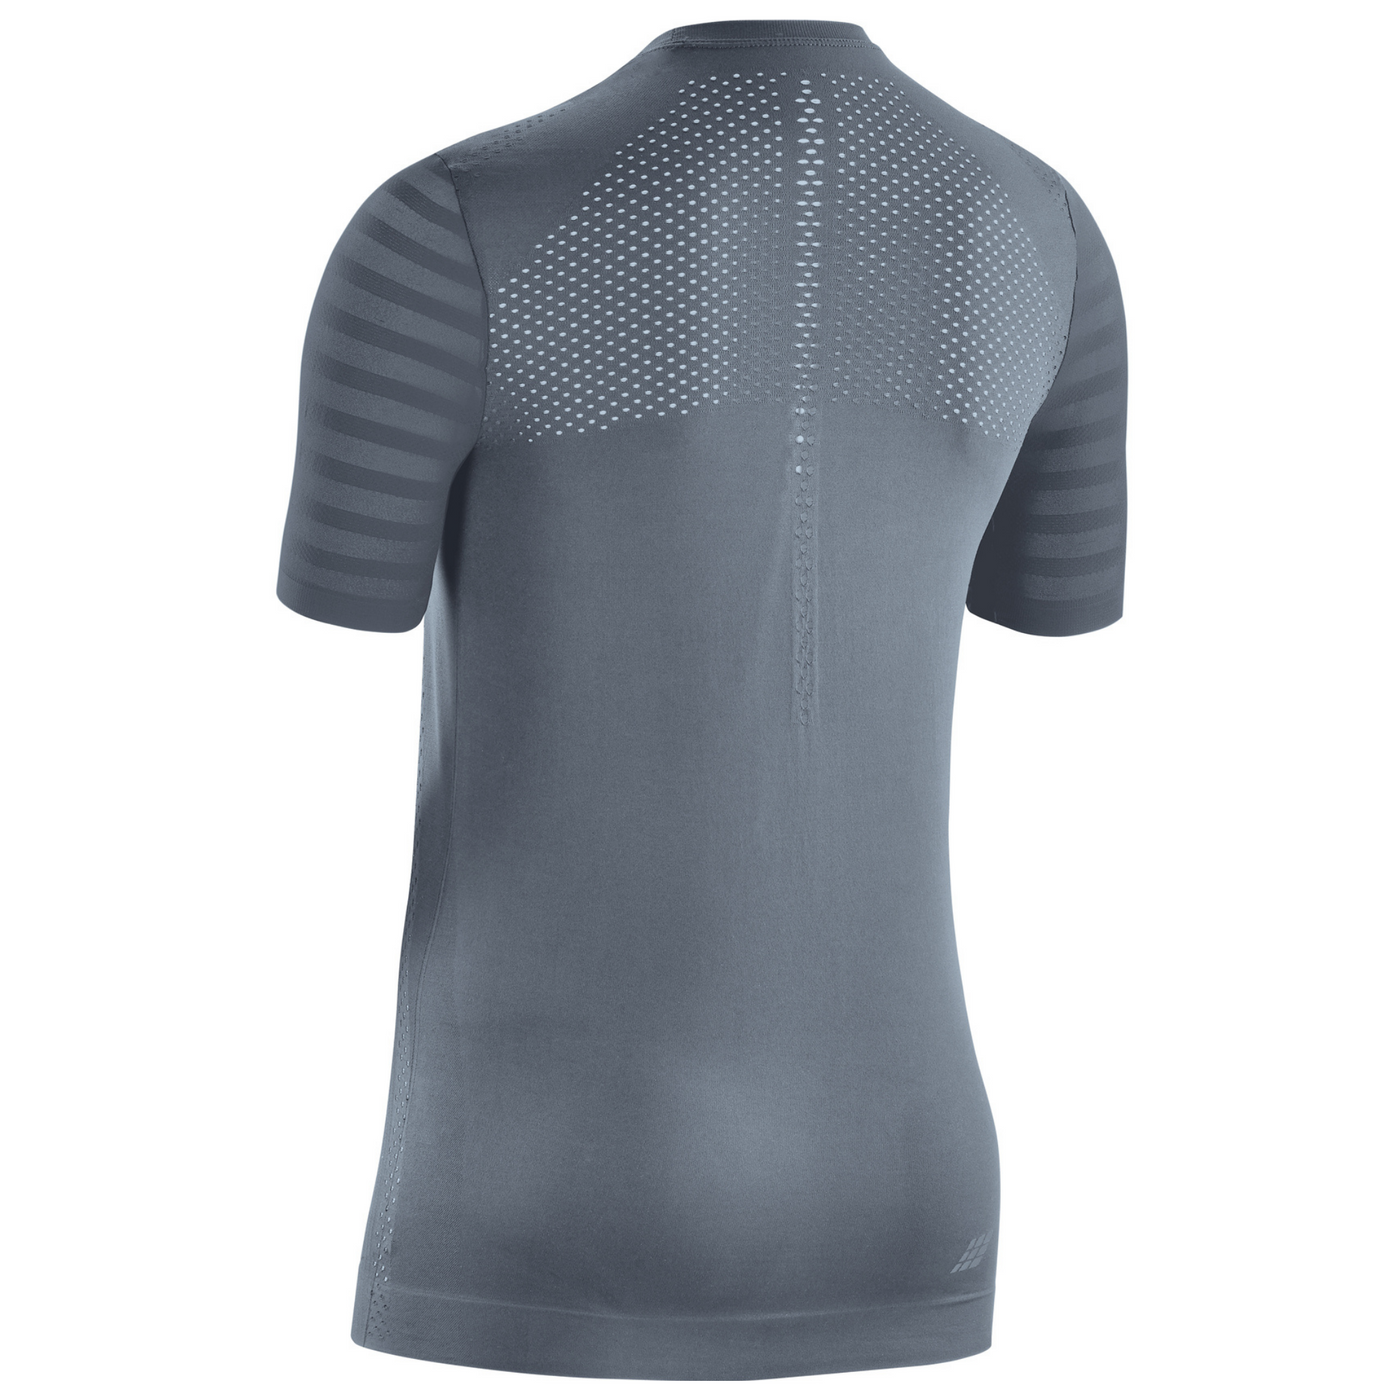 Ultralight Short Sleeve Shirt, Women, Grey, Back View